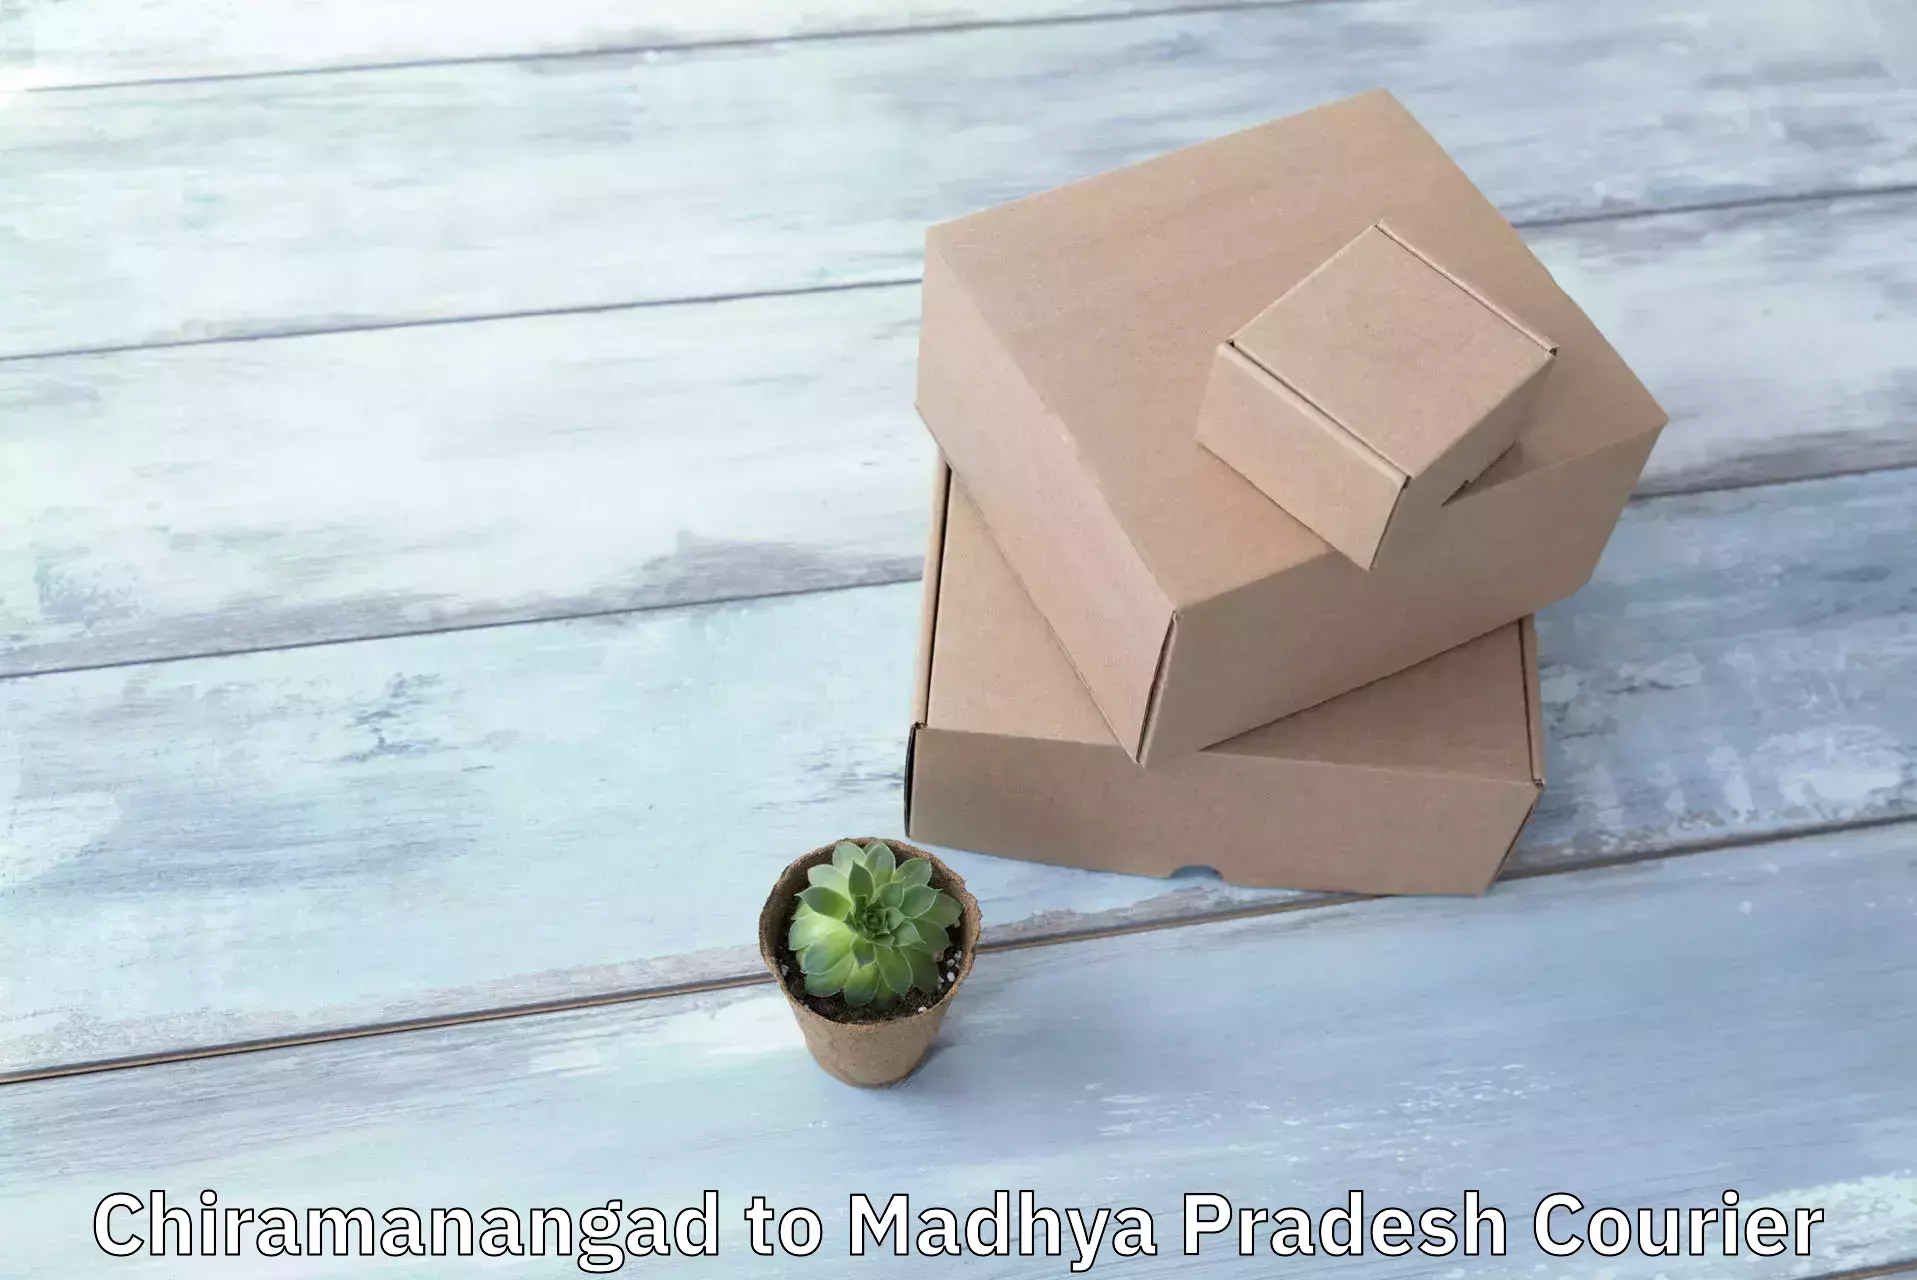 Package delivery network Chiramanangad to Madhya Pradesh